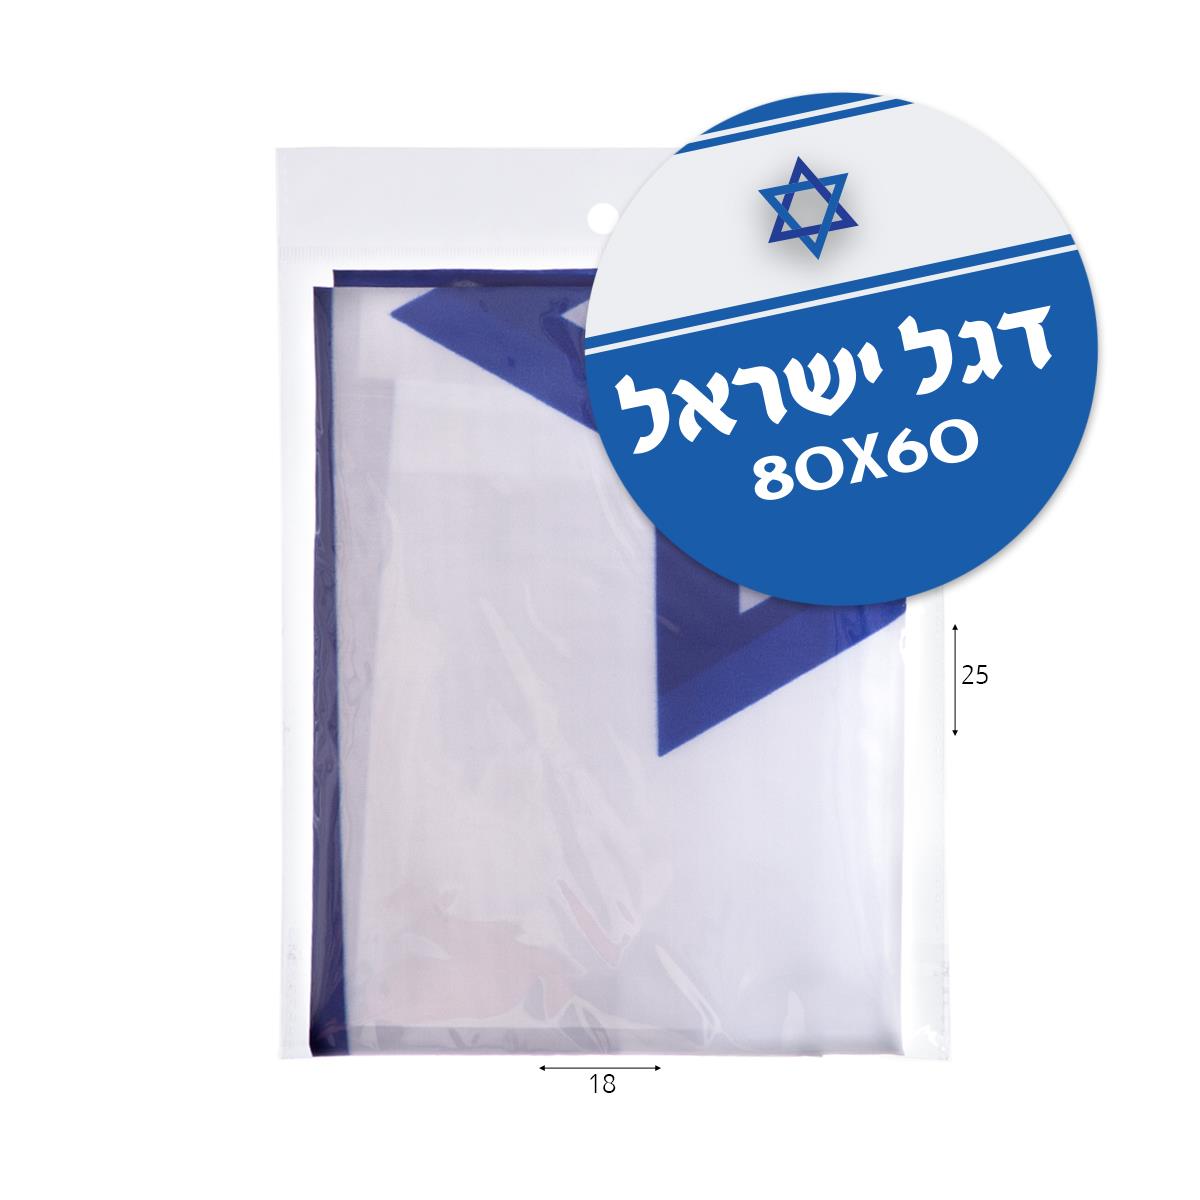 דגל ישראל 80*60